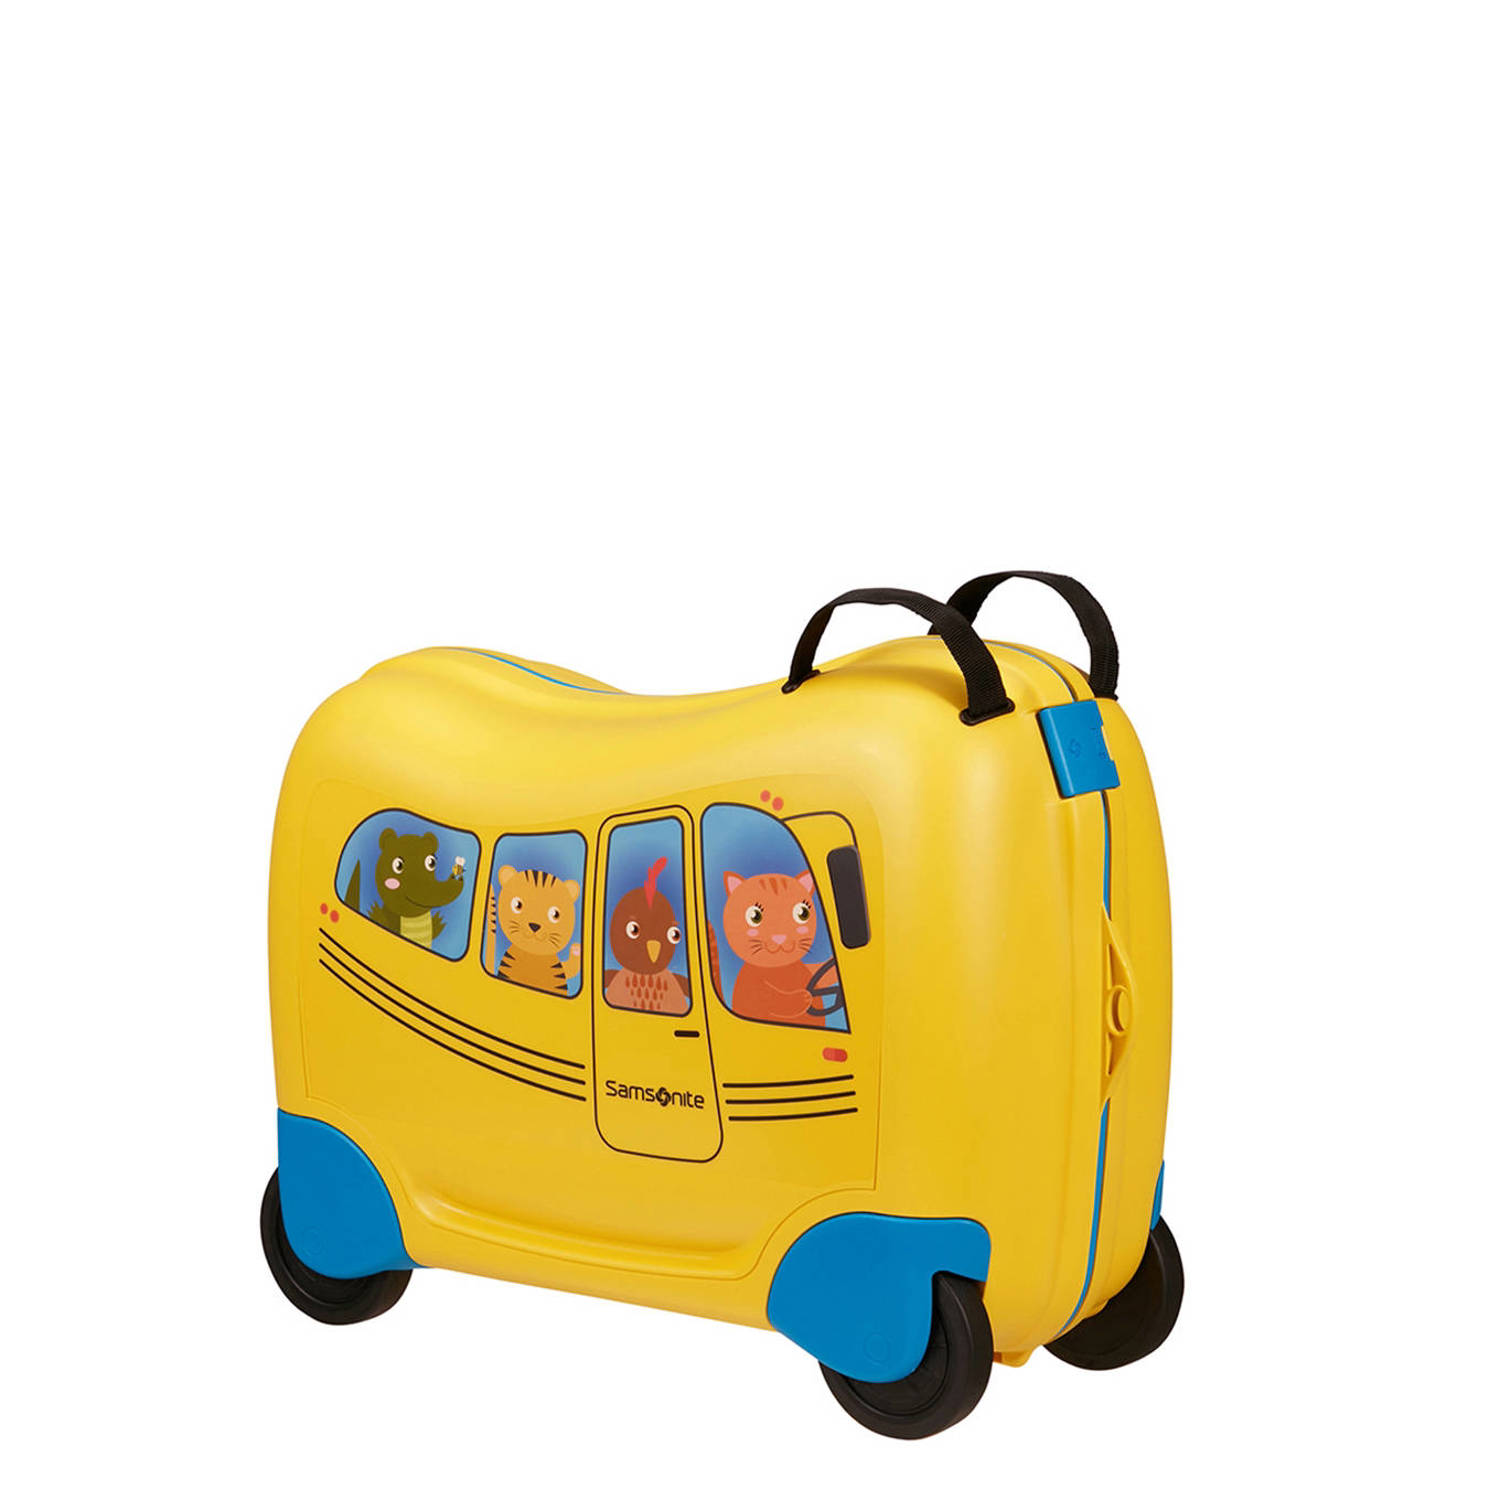 Samsonite trolley Dream2Go Ride-On School Bus